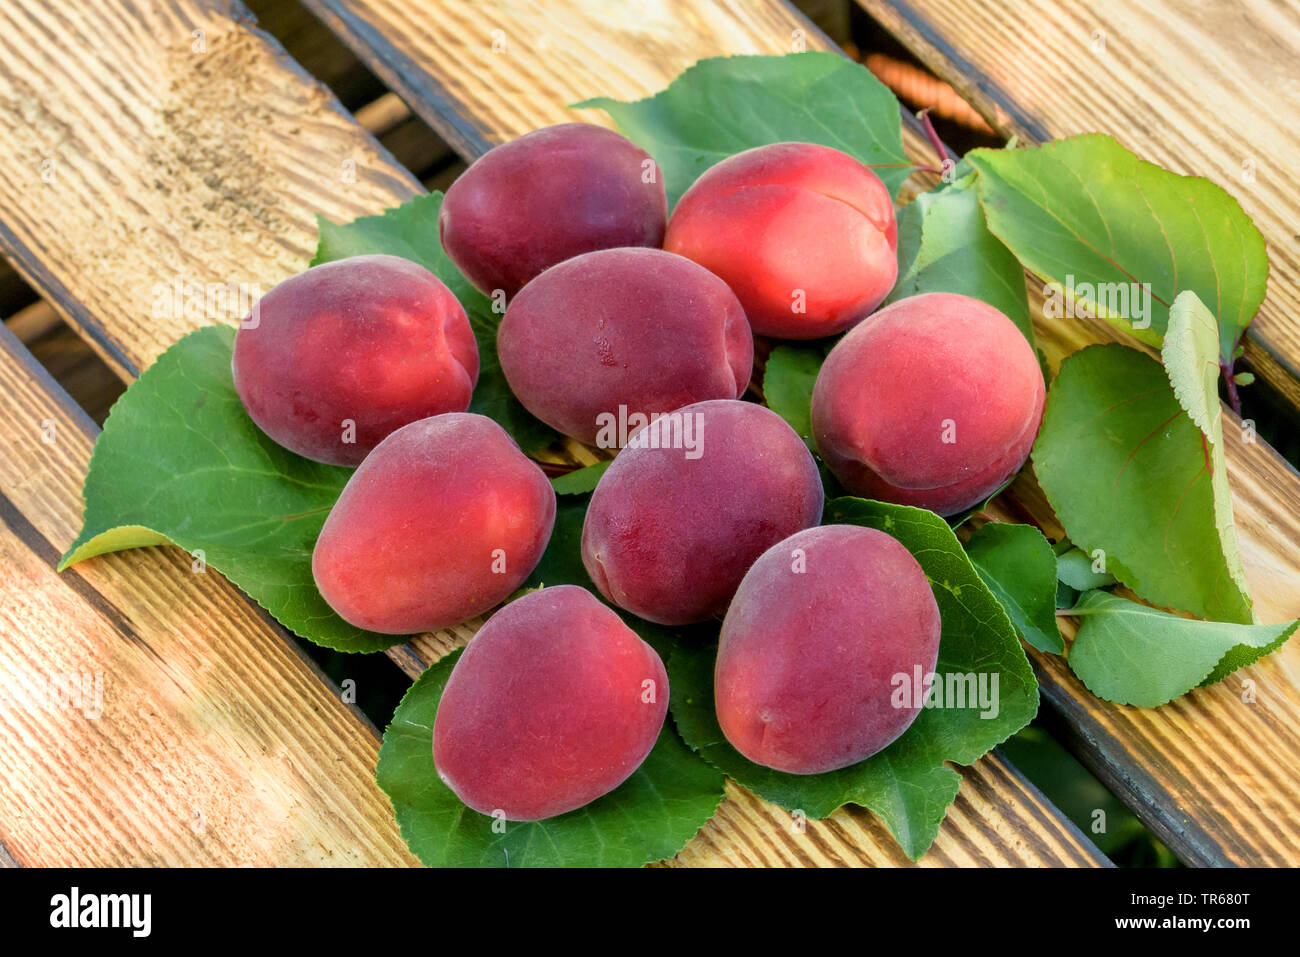 apricot tree (Prunus armeniaca 'Jengat', Prunus armeniaca Jengat), apricots, cultivar Jengat Stock Photo